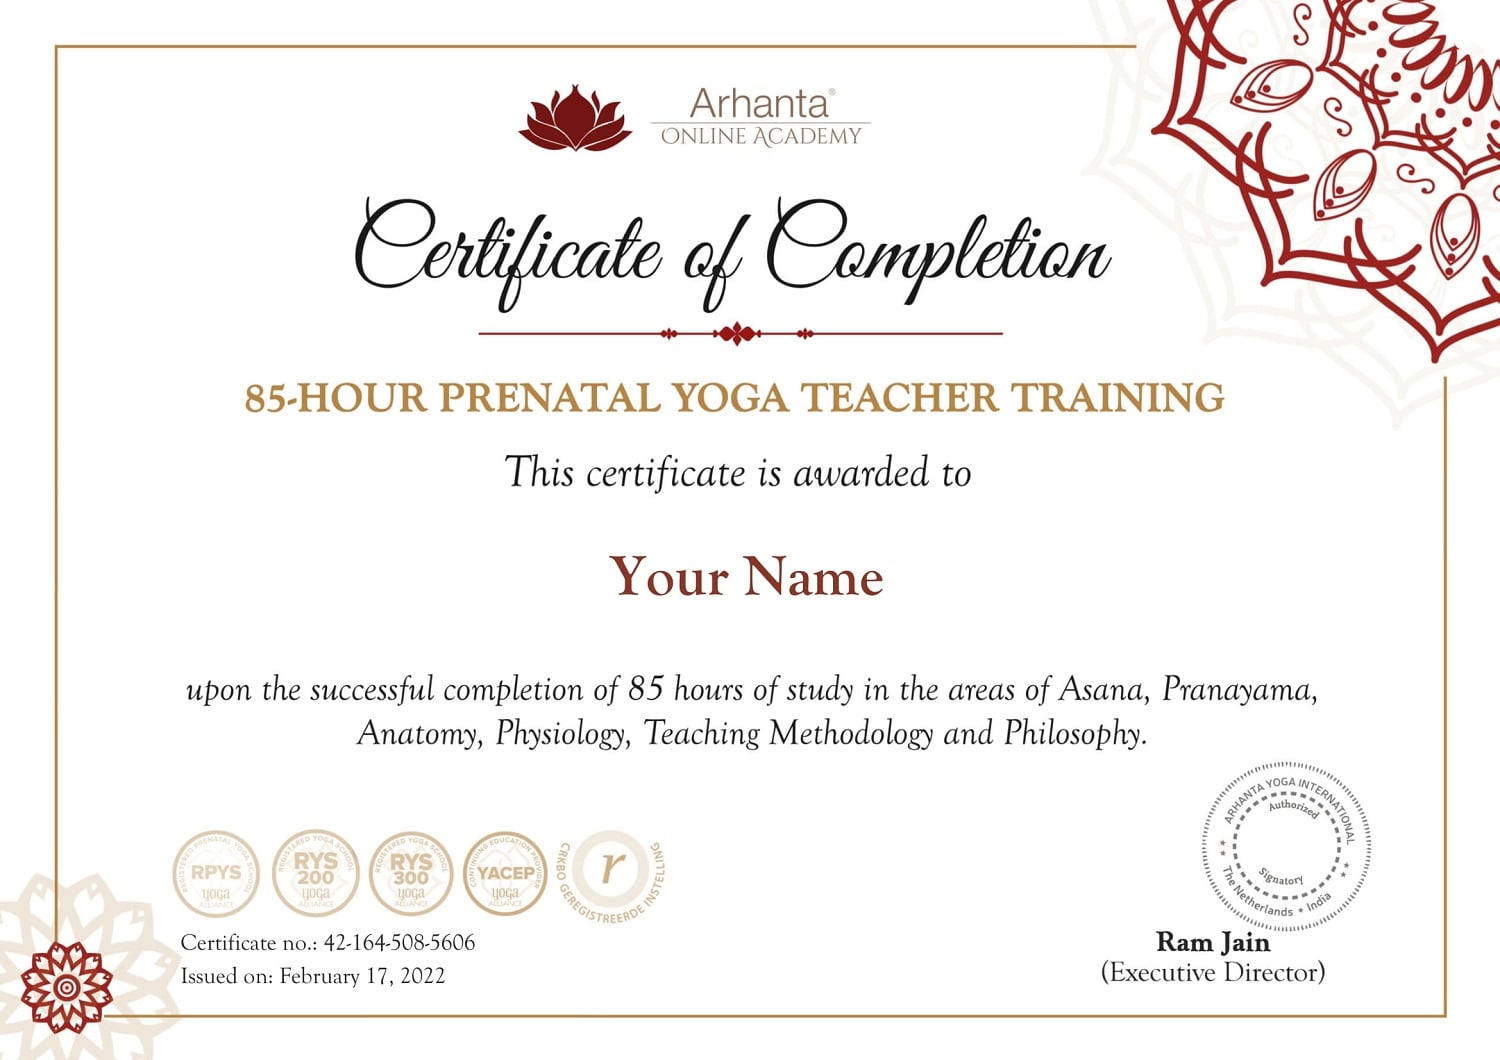 Certificat de formation de professeur de yoga prénatal (85 heures)